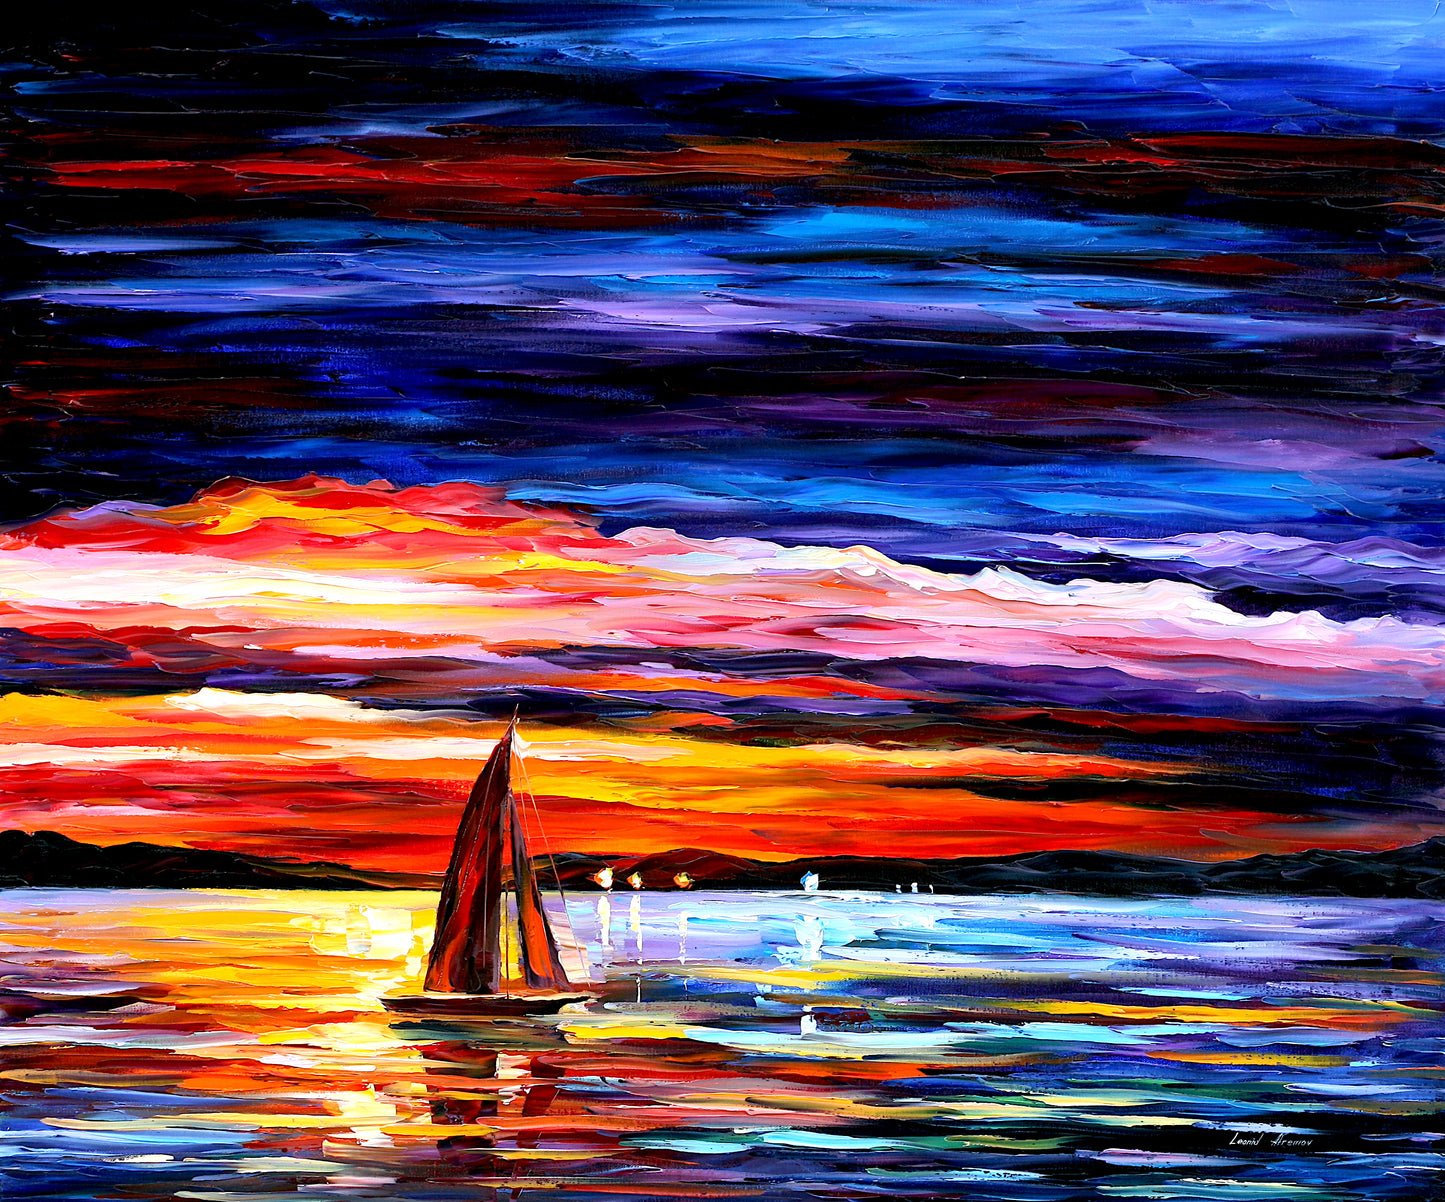 Leonid Afremov NIGHT SEA Puzzle Painting